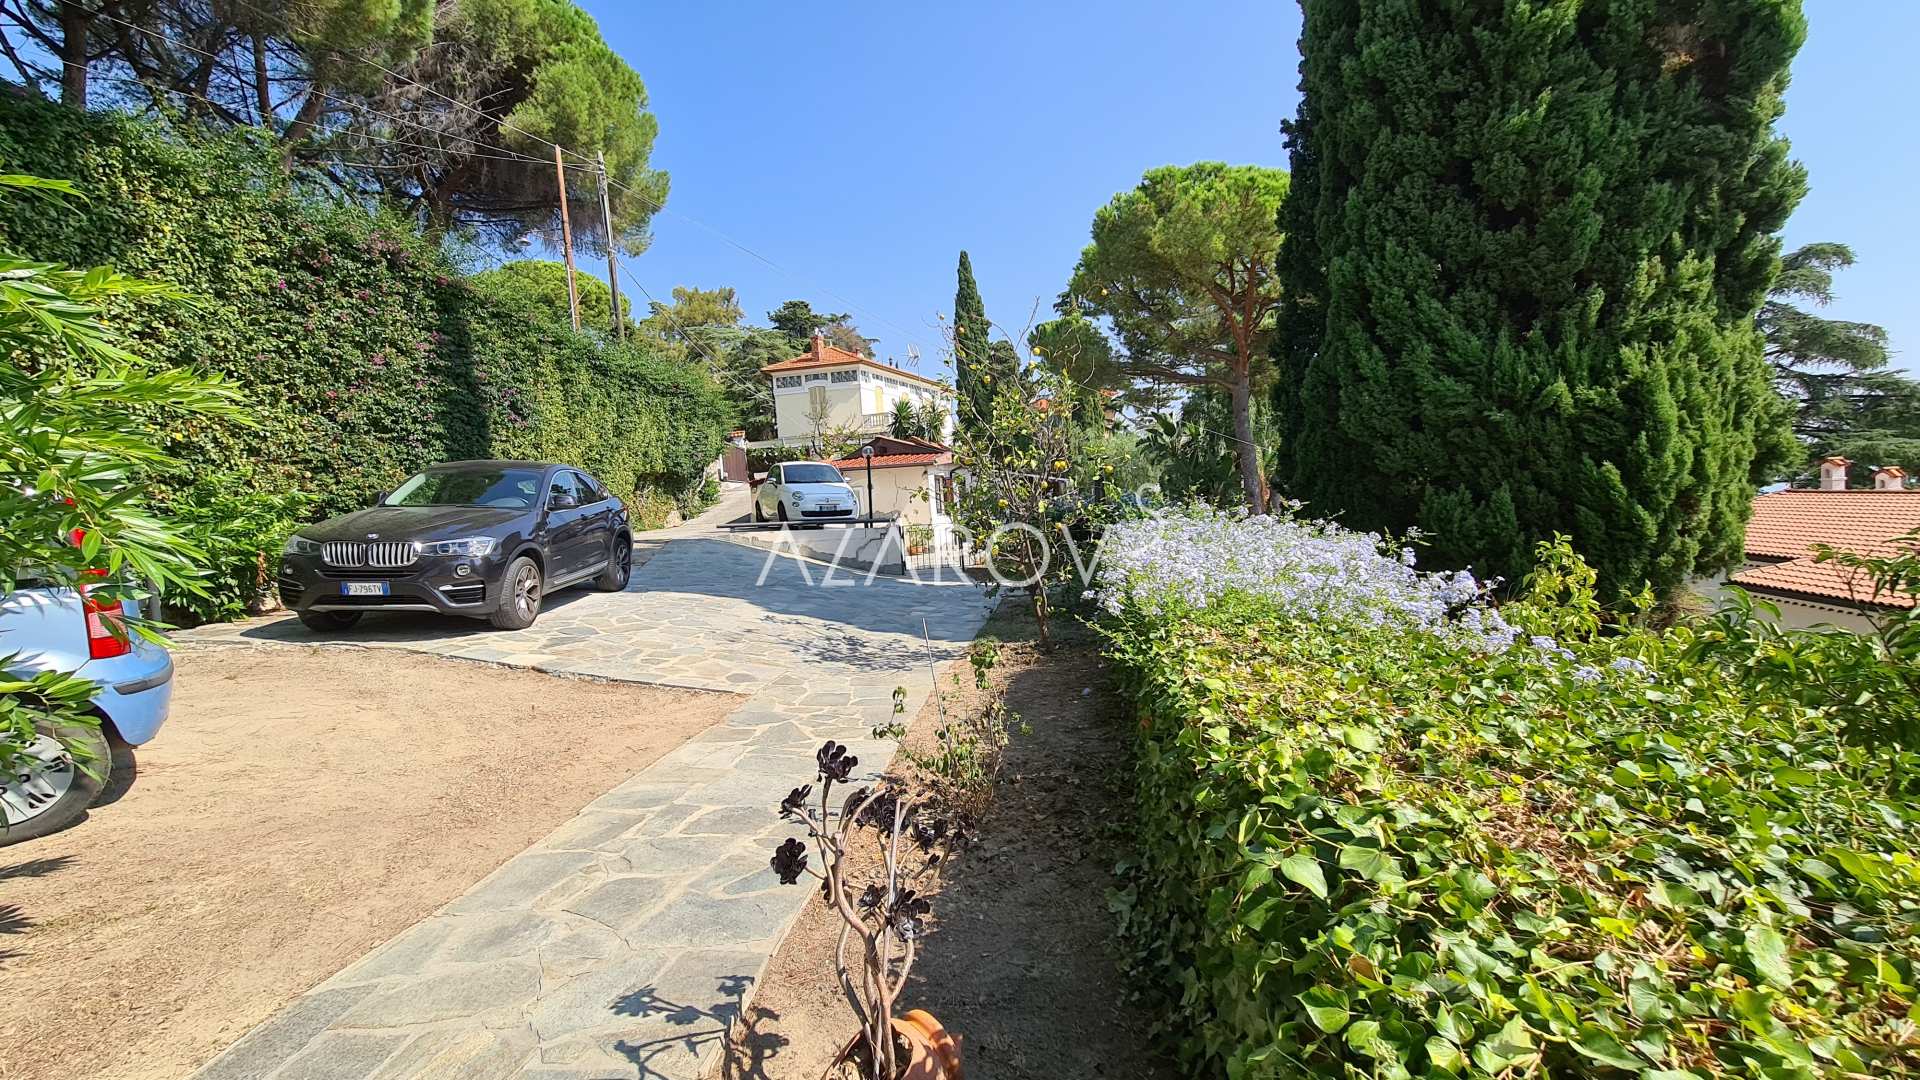 Villa in Sanremo met een prachtig park